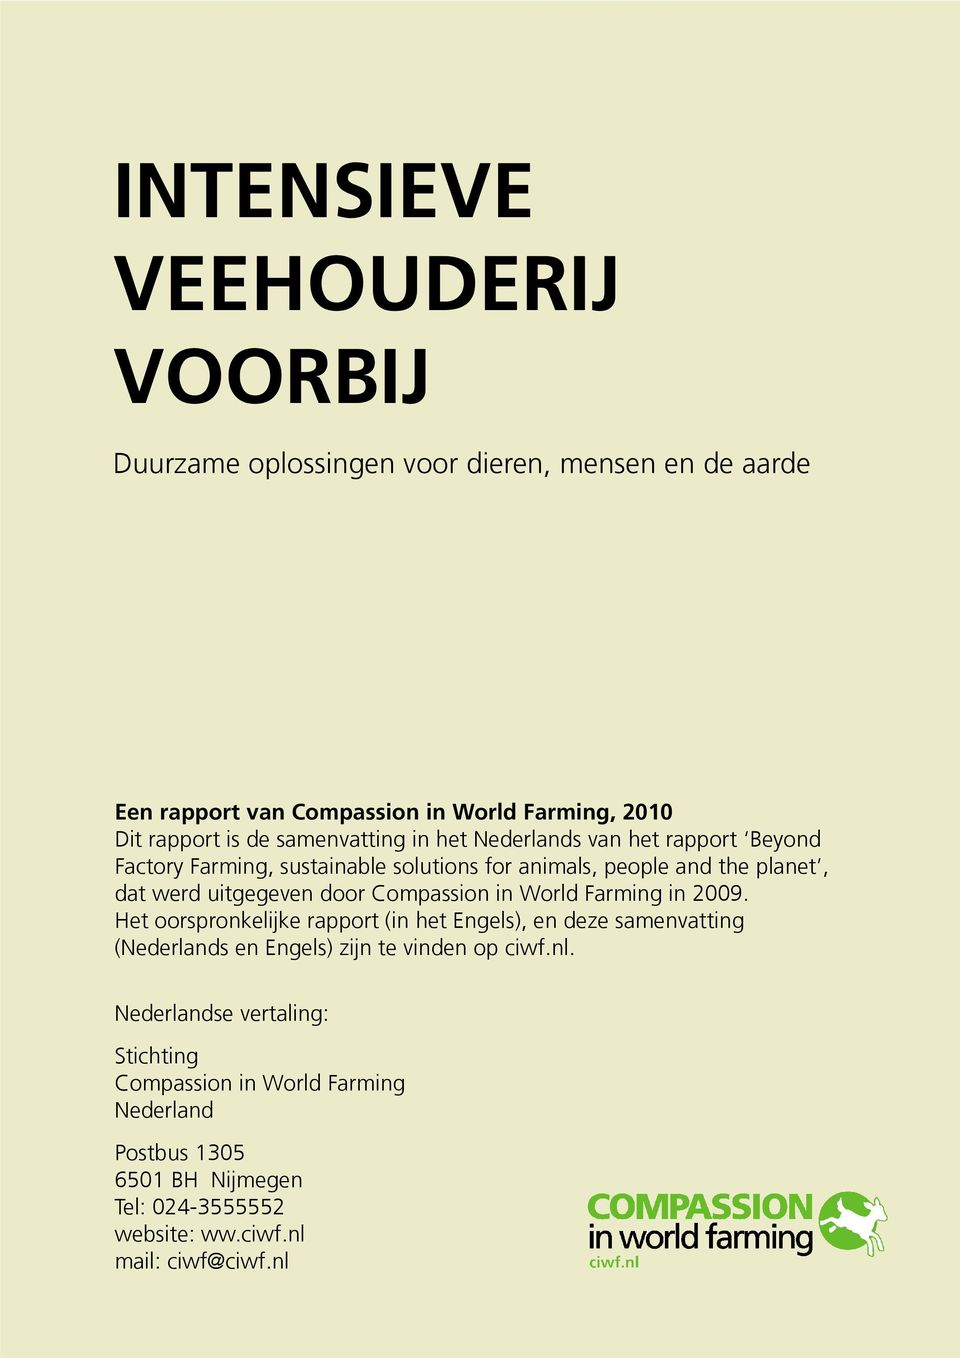 Compassion in World Farming in 2009. Het oorspronkelijke rapport (in het Engels), en deze samenvatting (Nederlands en Engels) zijn te vinden op ciwf.nl.